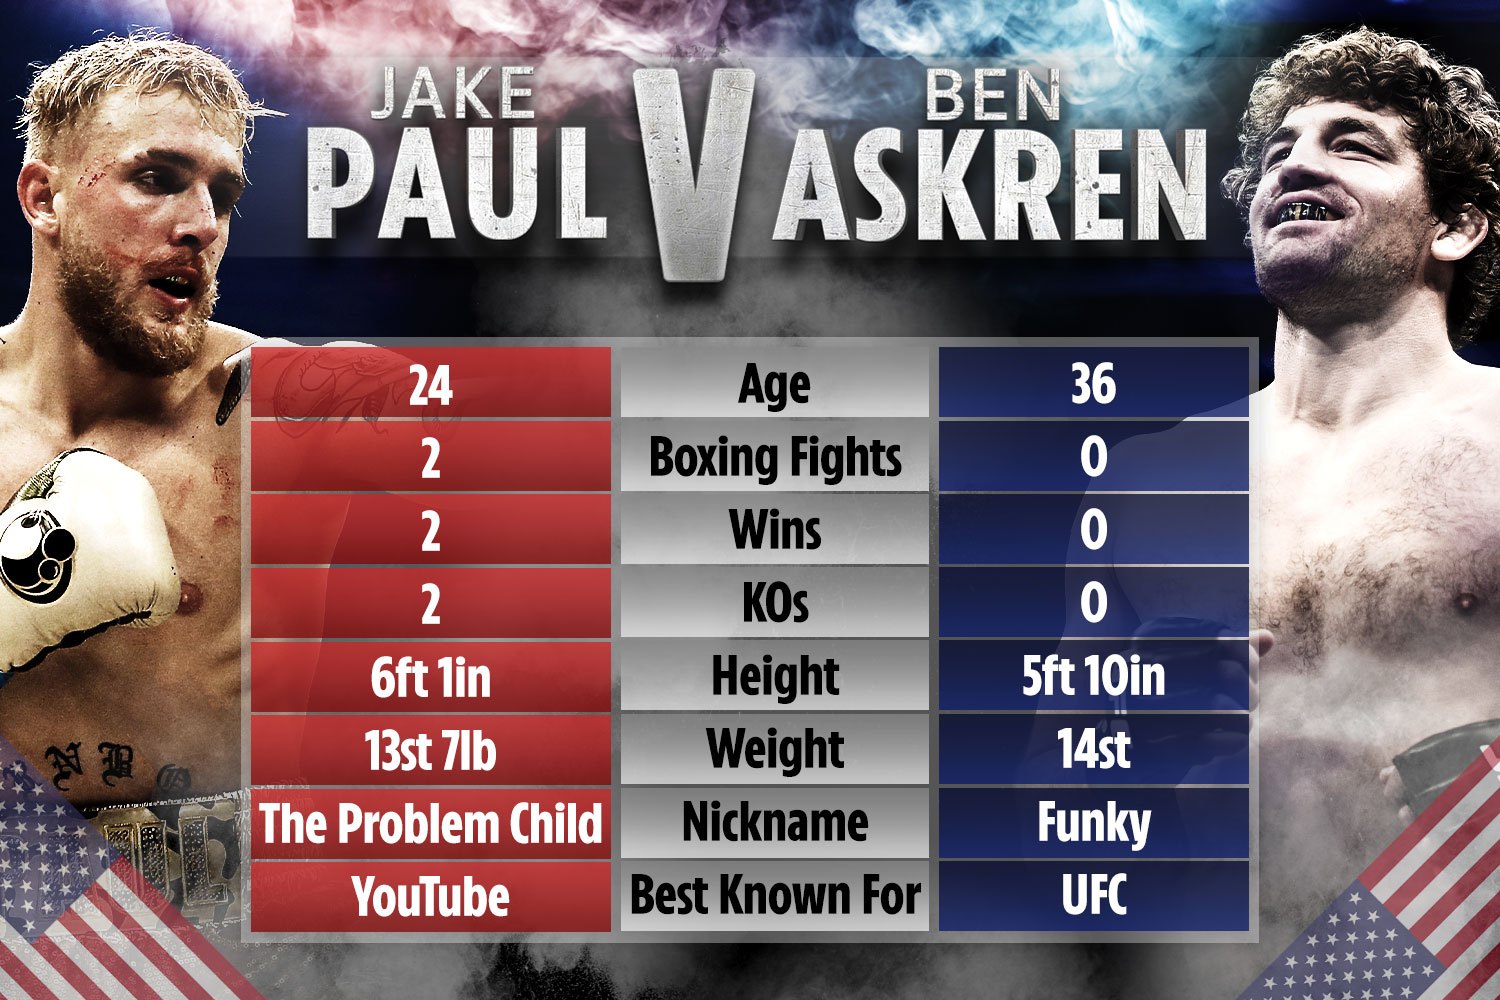 jake paul vs ben askren free live stream